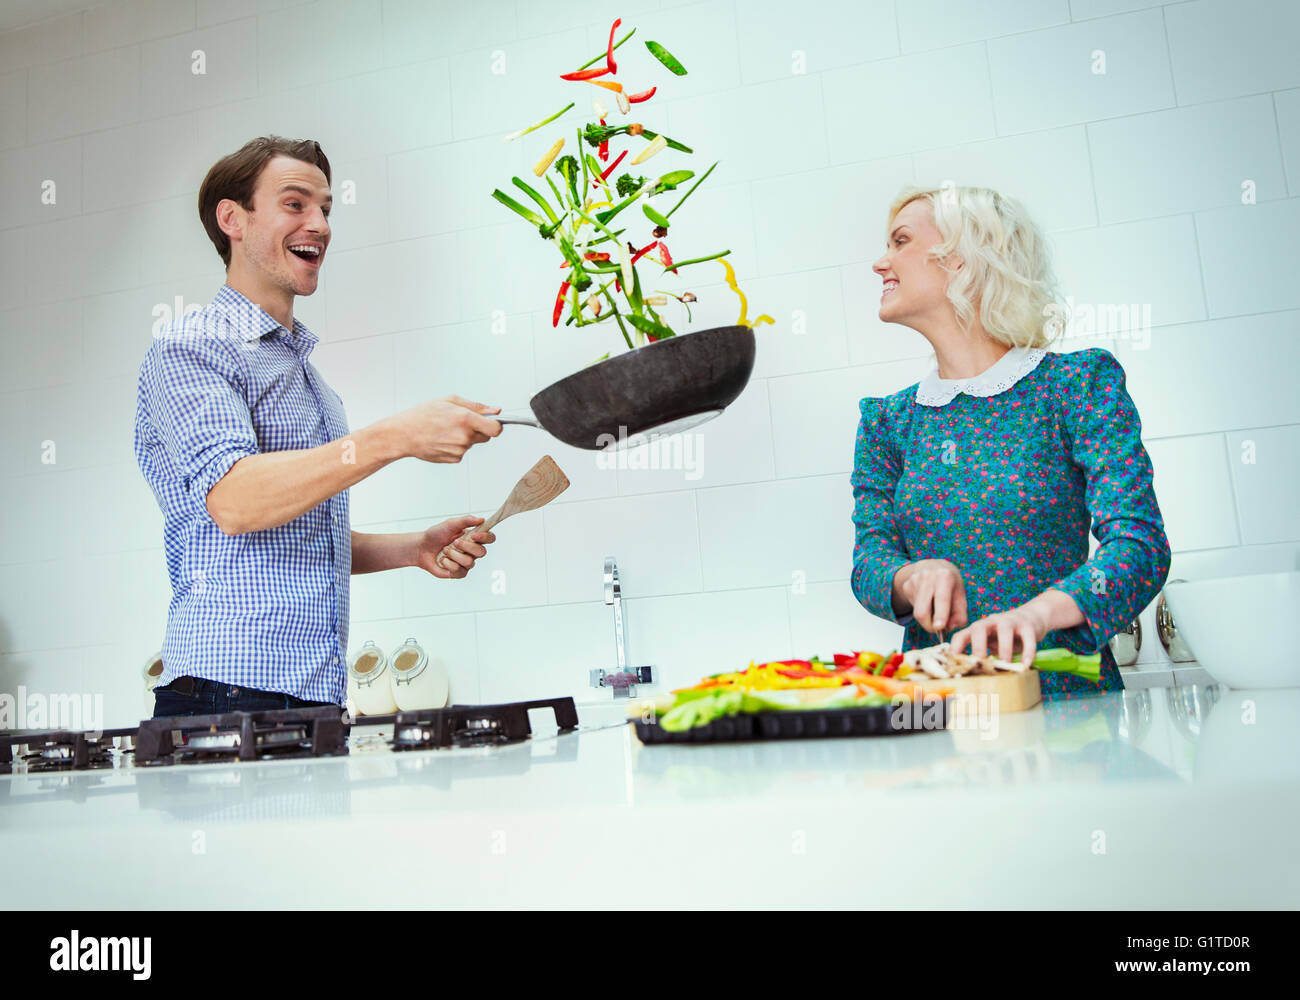 Surpris couple cooking renversant les légumes dans la poêle dans la cuisine Banque D'Images